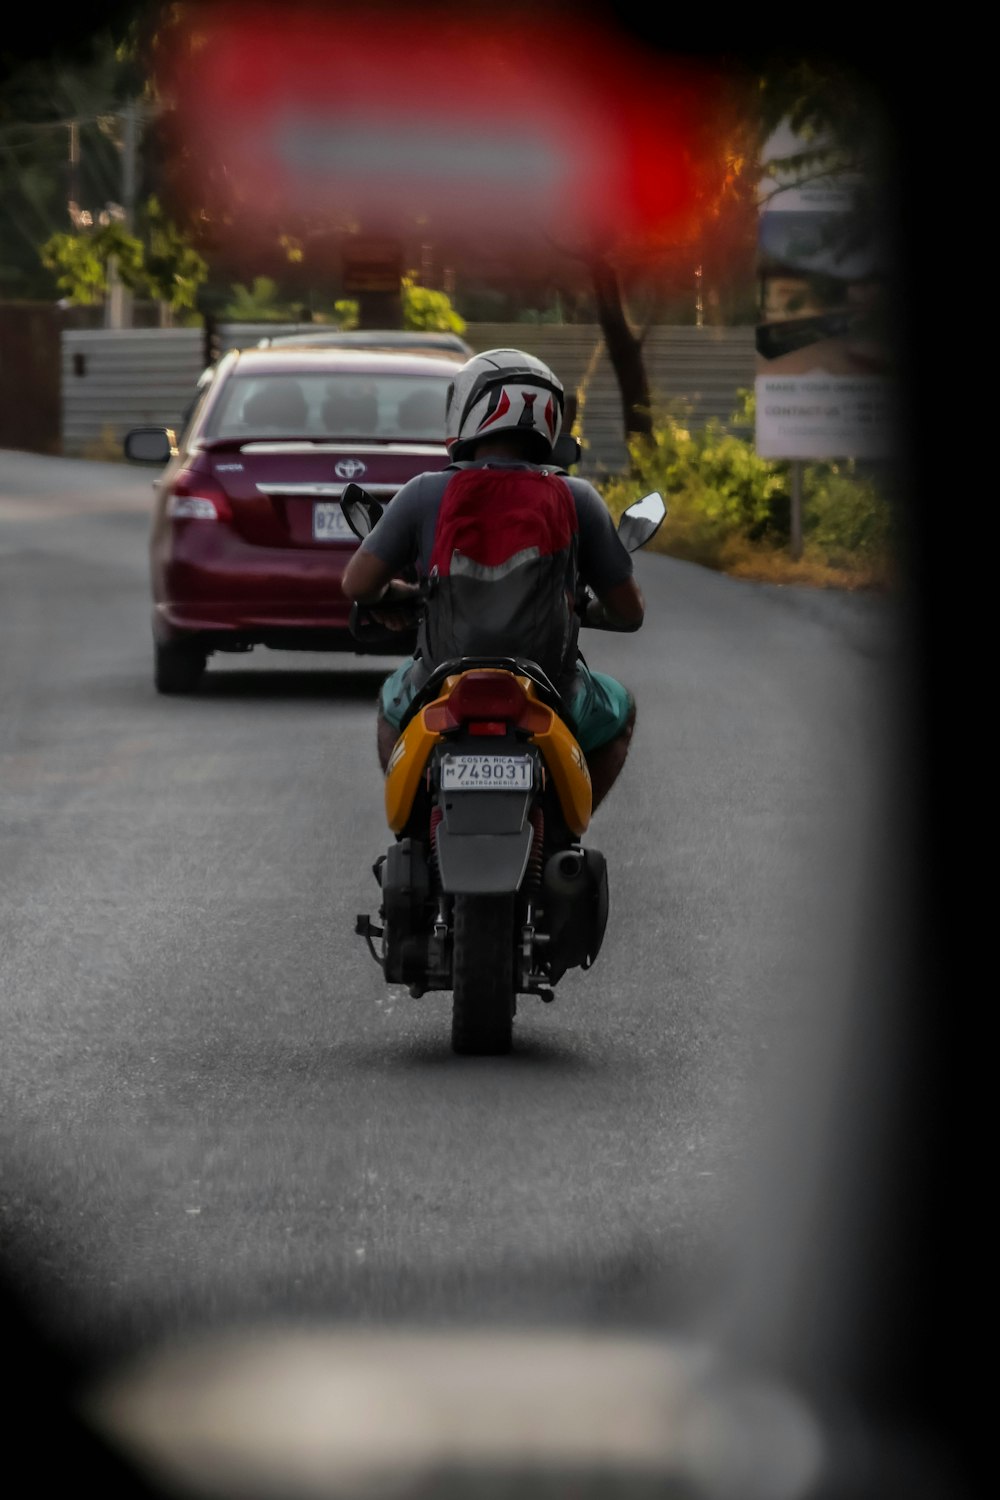 Un hombre conduciendo una motocicleta por una calle junto a un coche rojo